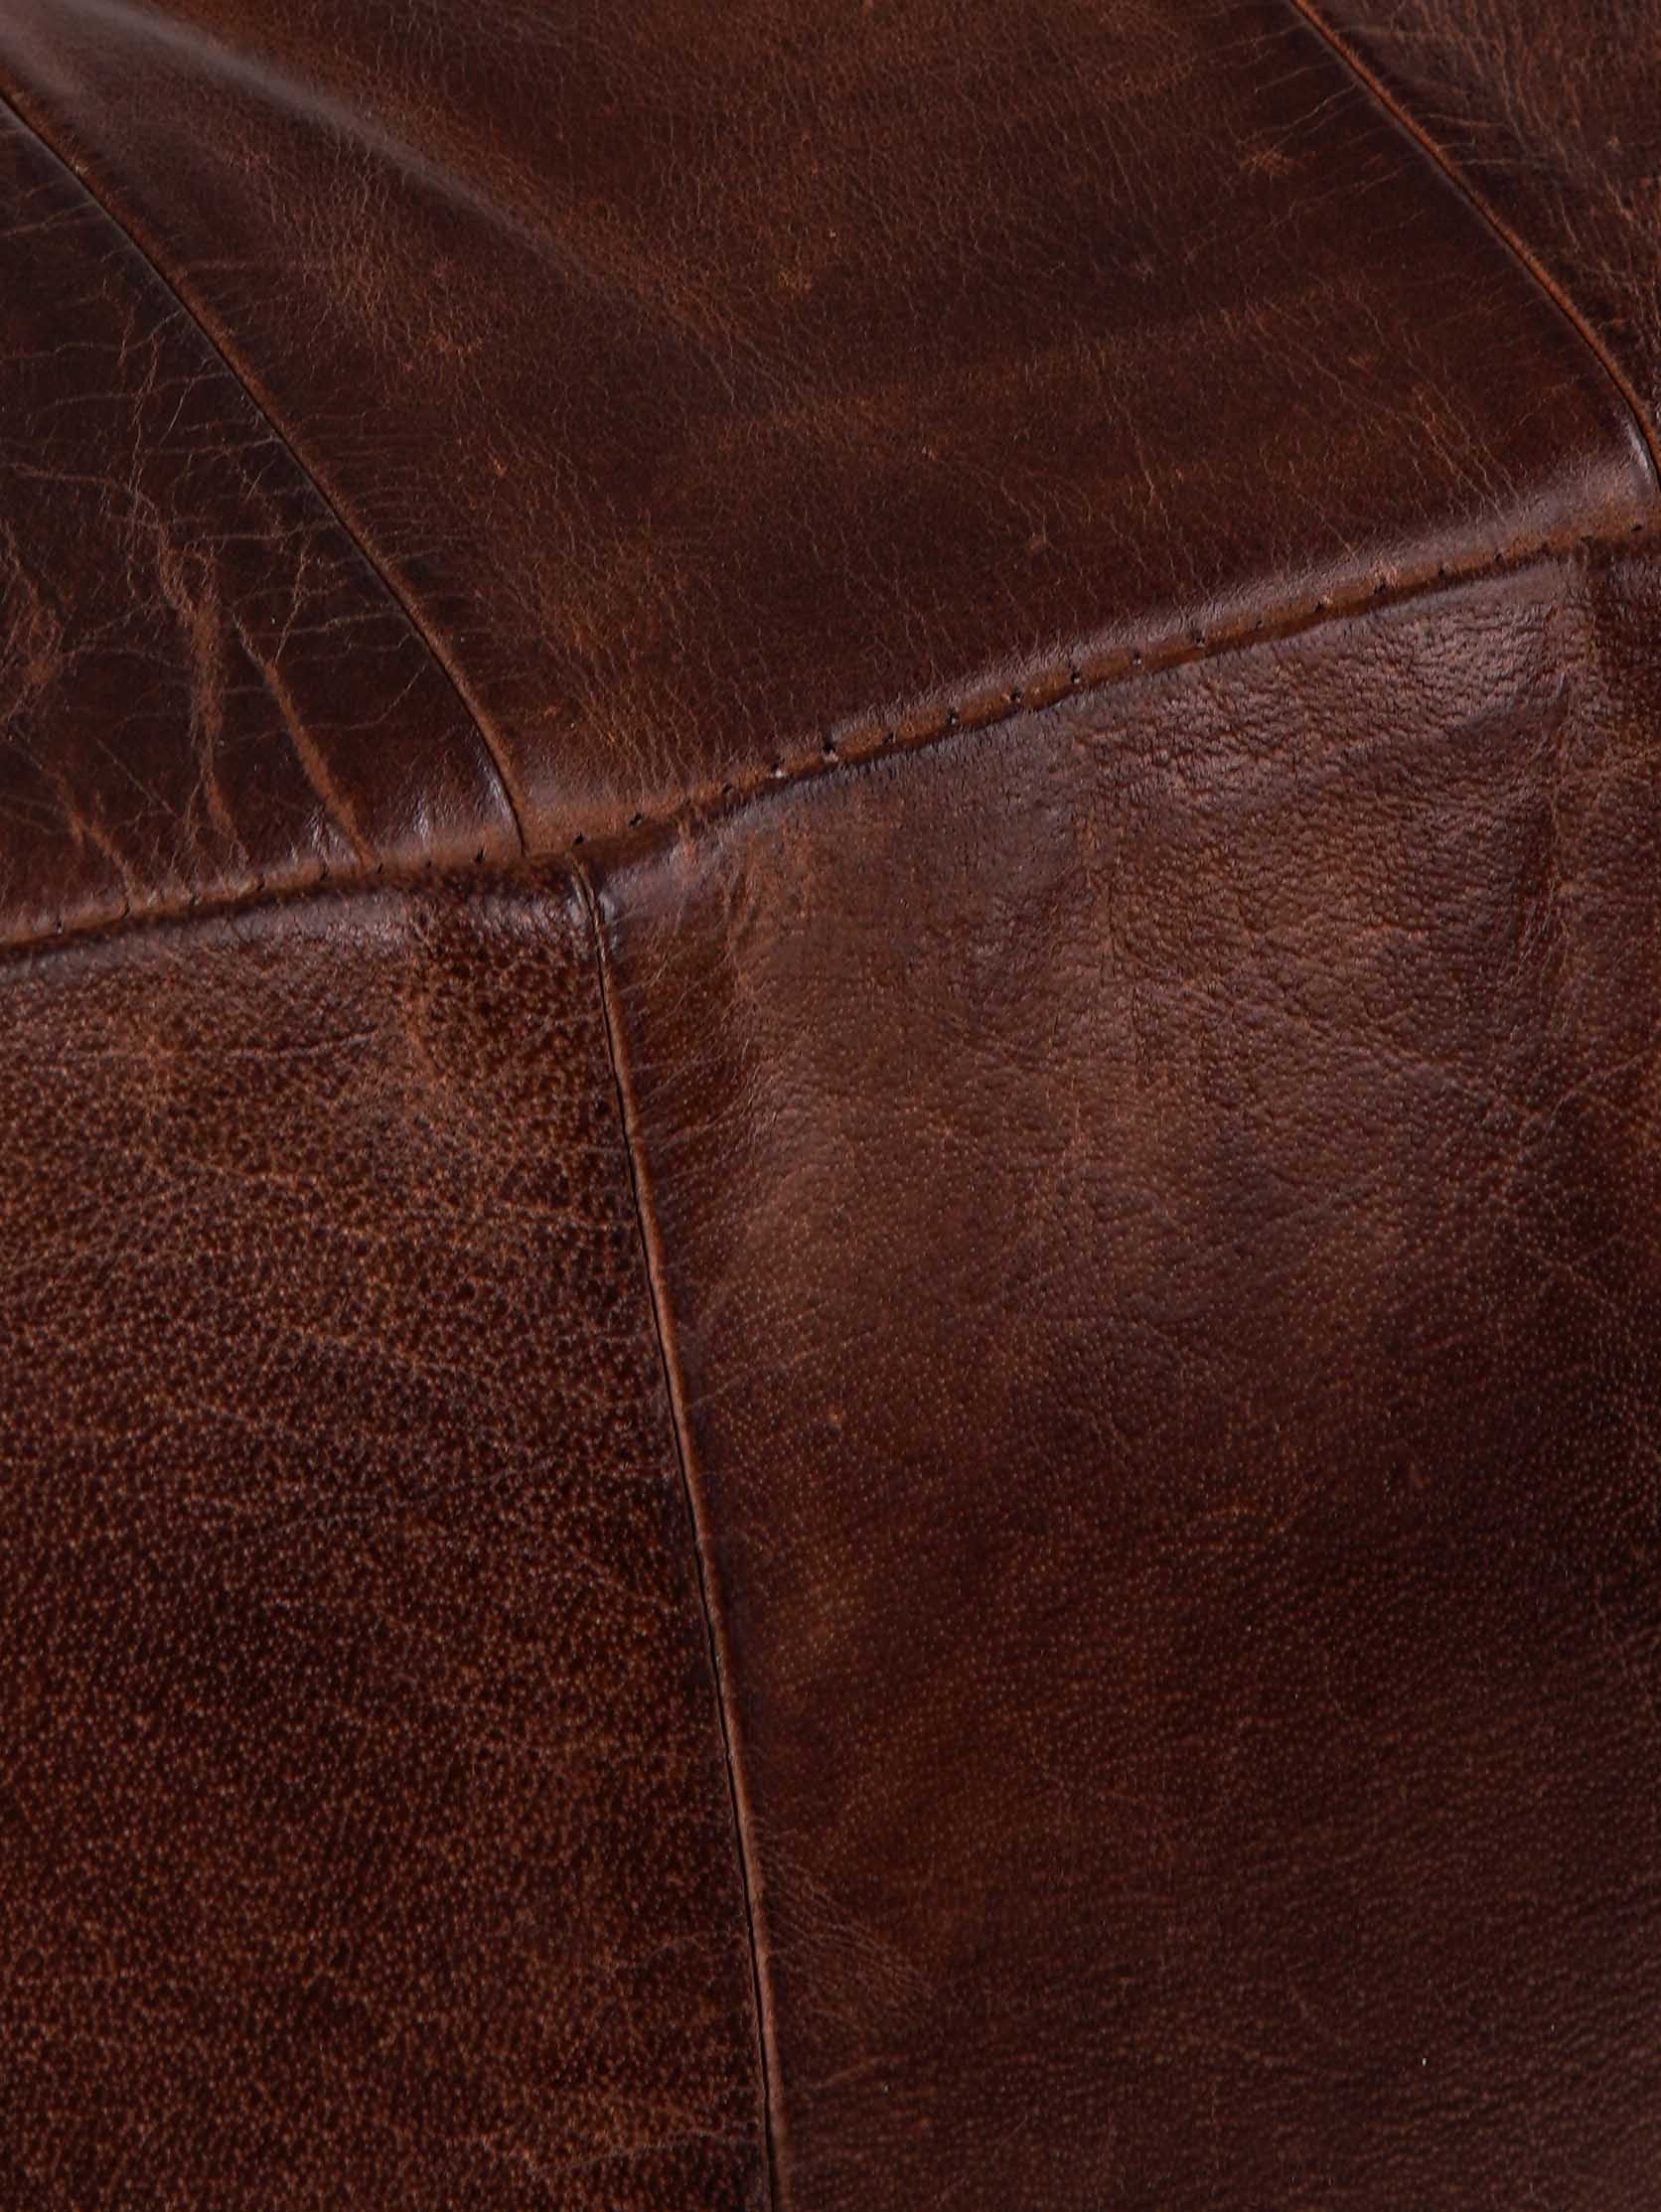 Classic Cognac Leather Pouf